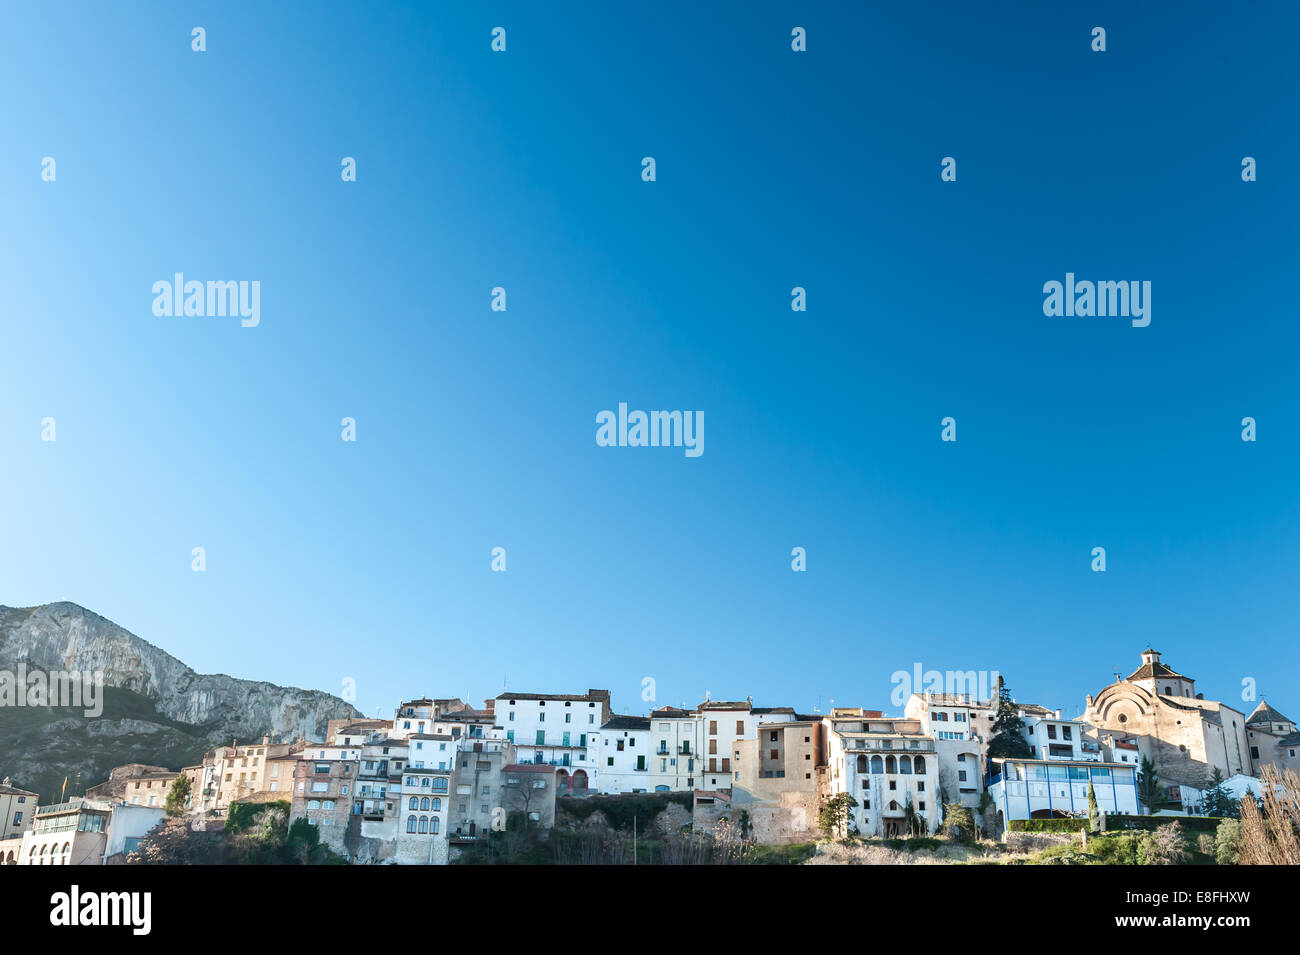 Provincia de tarragona fotografías e imágenes de alta resolución - Alamy